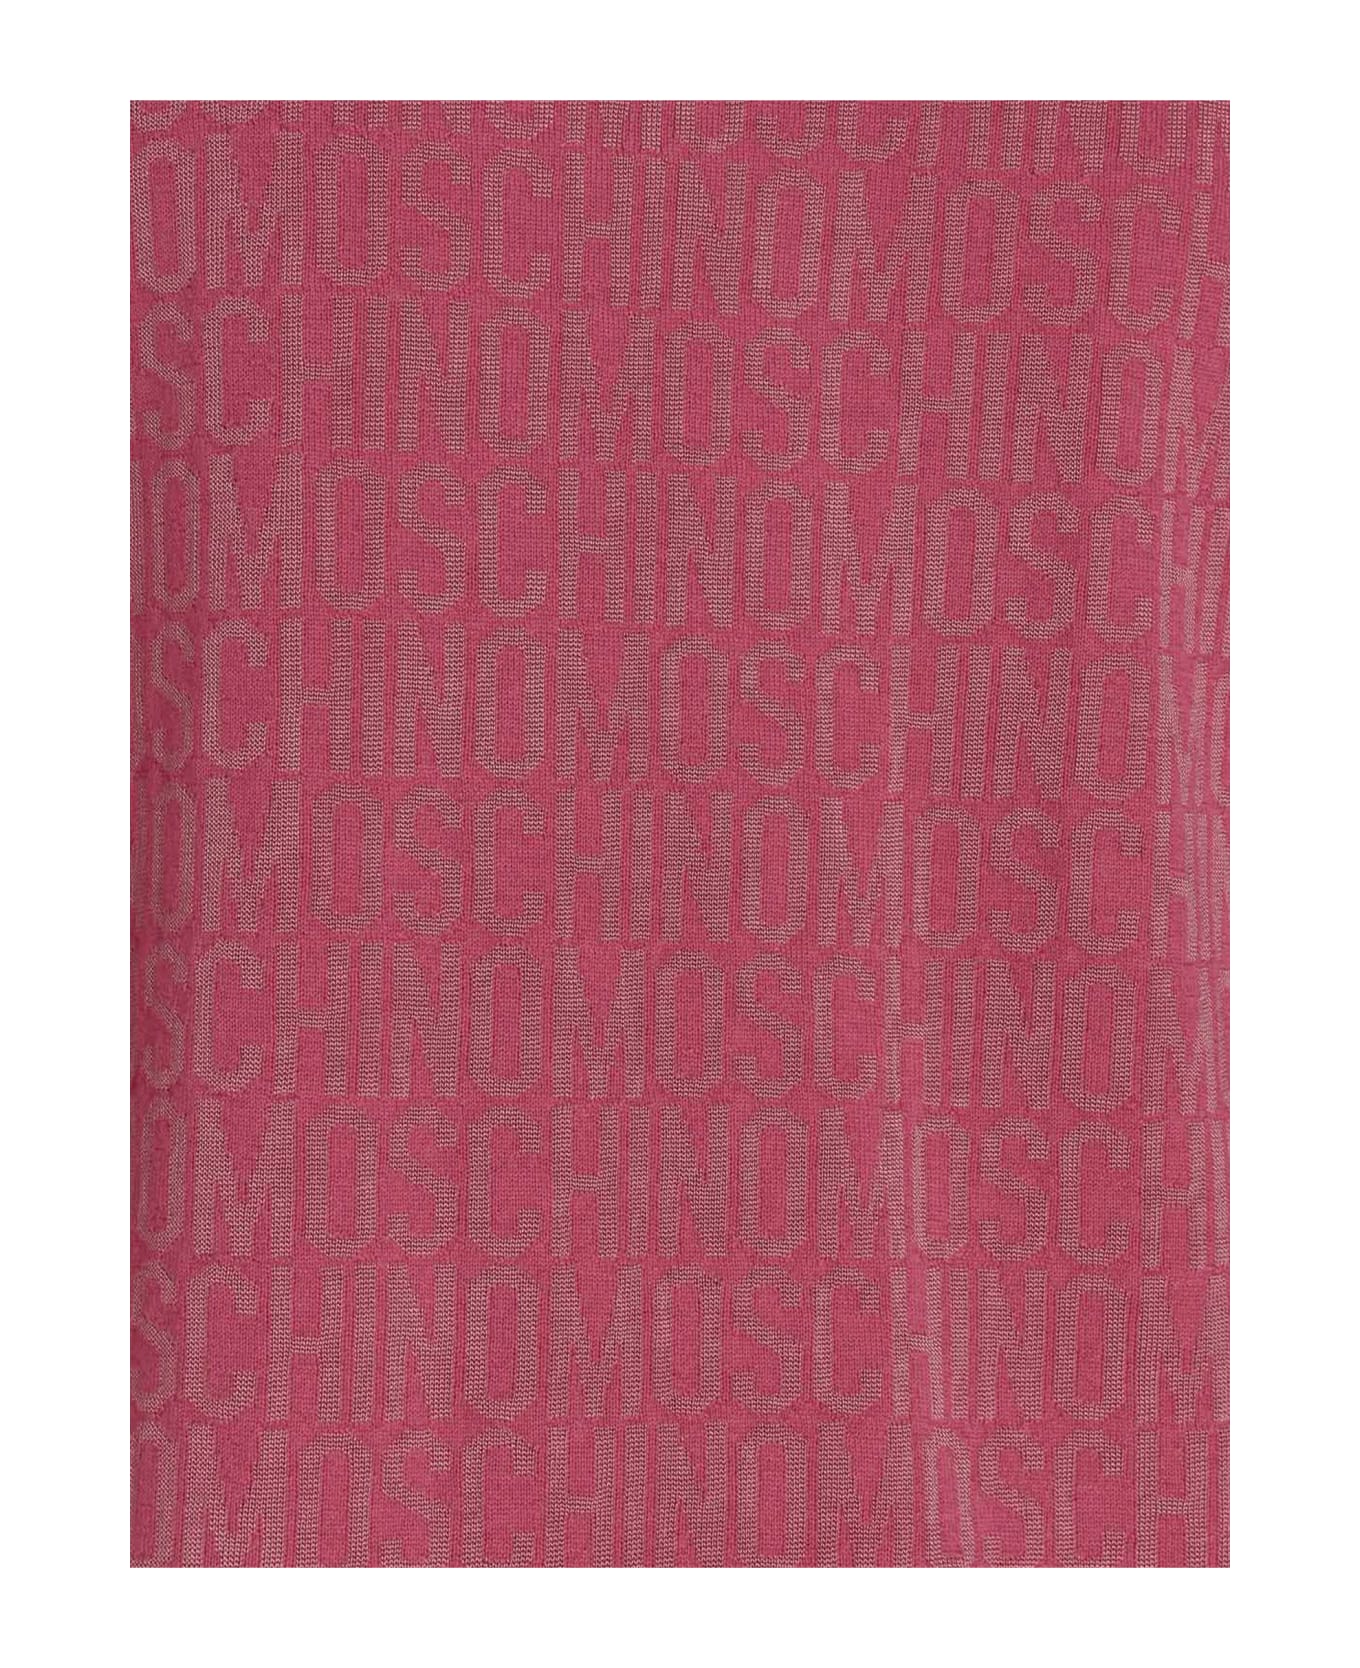 Moschino 'monogram' Cardigan - Fuchsia